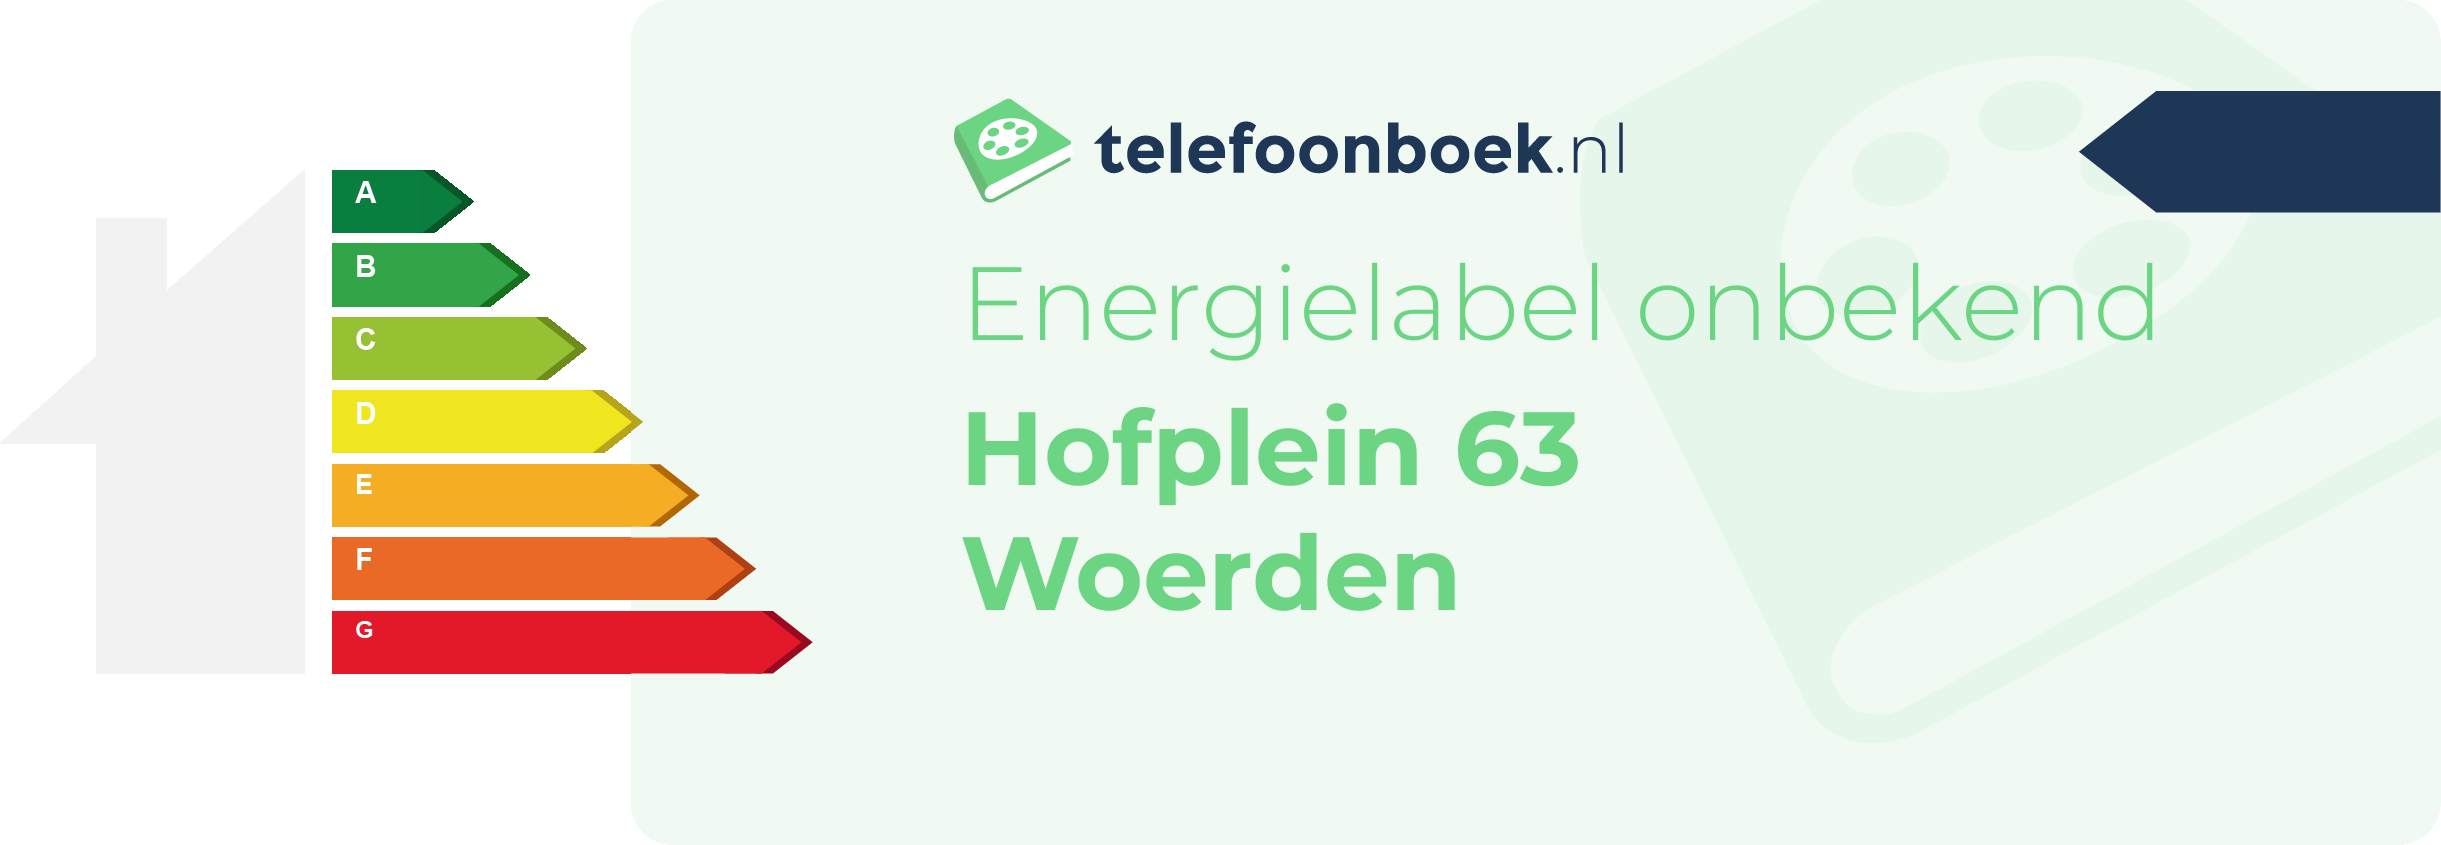 Energielabel Hofplein 63 Woerden